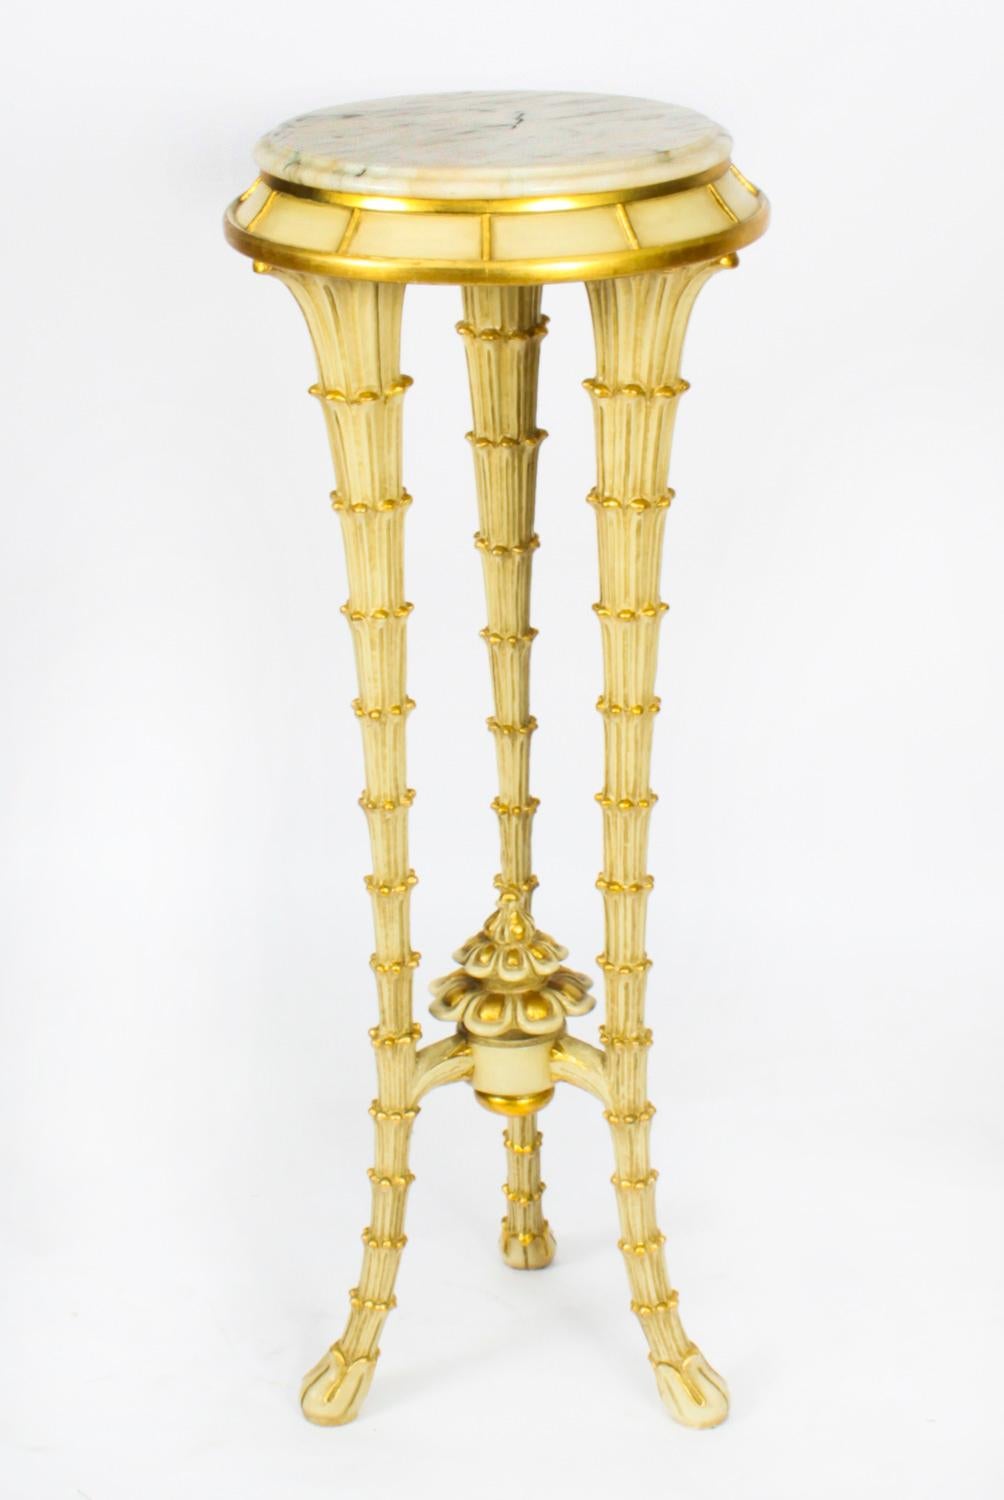 Il s'agit d'un magnifique piédestal en marbre blanc peint en crème et doré, datant d'environ 1950.

Le plateau circulaire en marbre repose sur des pieds tripodes sculptés en forme de troncs de palmiers effilés et réunis par un X avec un rondeau